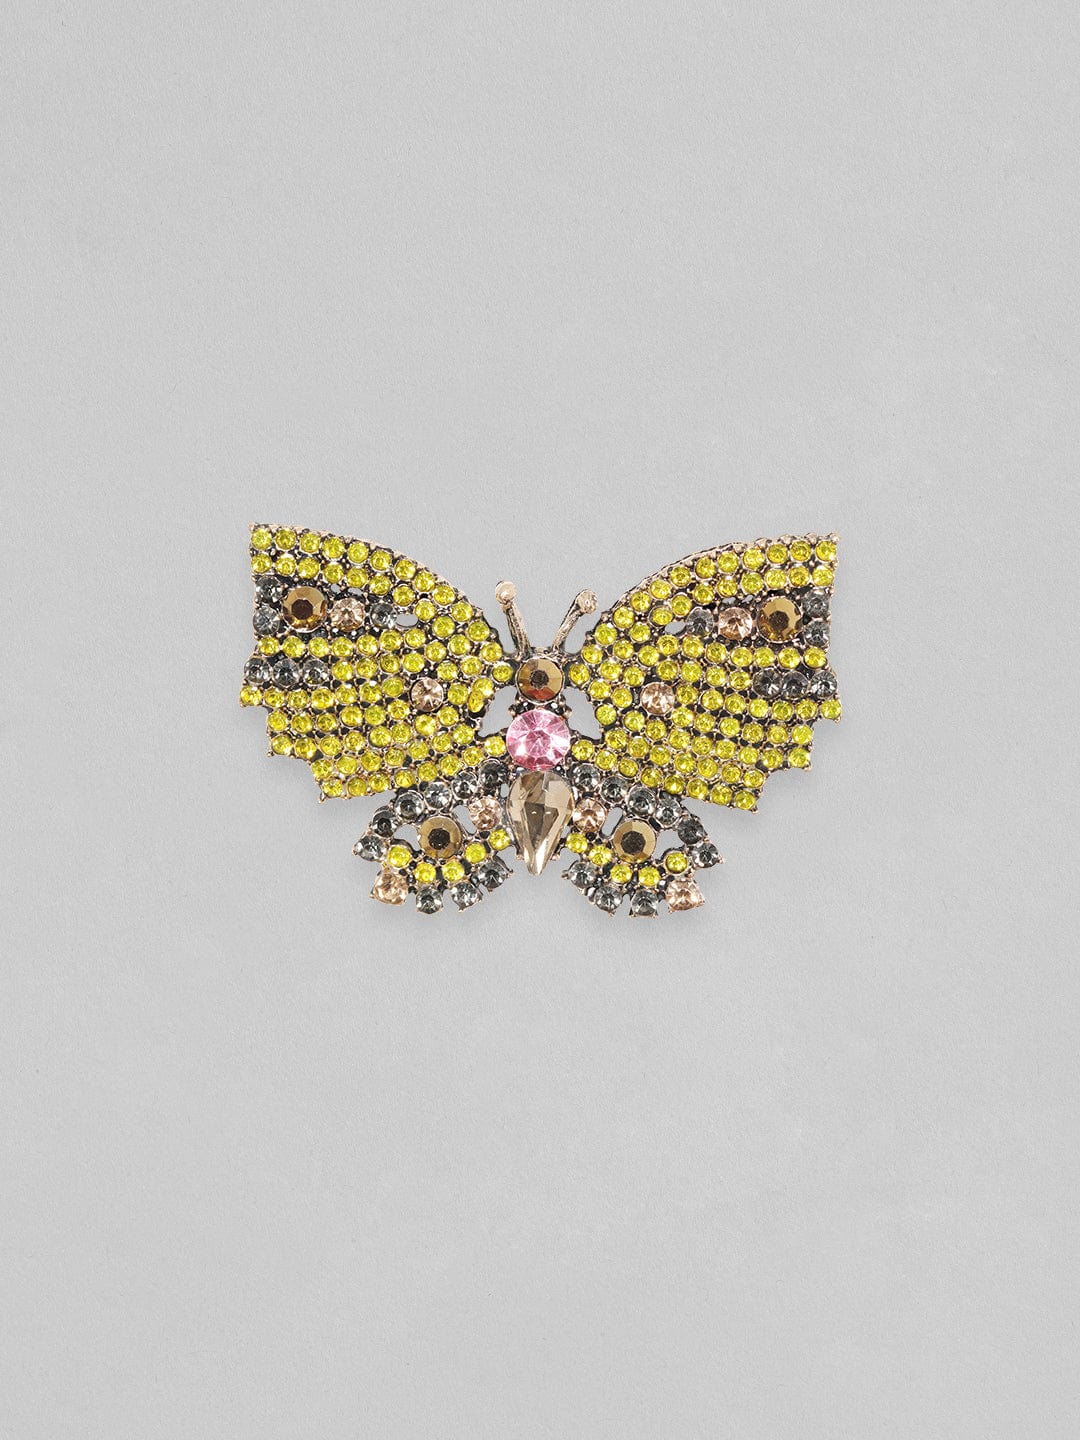 Rubans Yellow Beaded Handcrafted Butterfly Motif Statement Earrings. Earrings